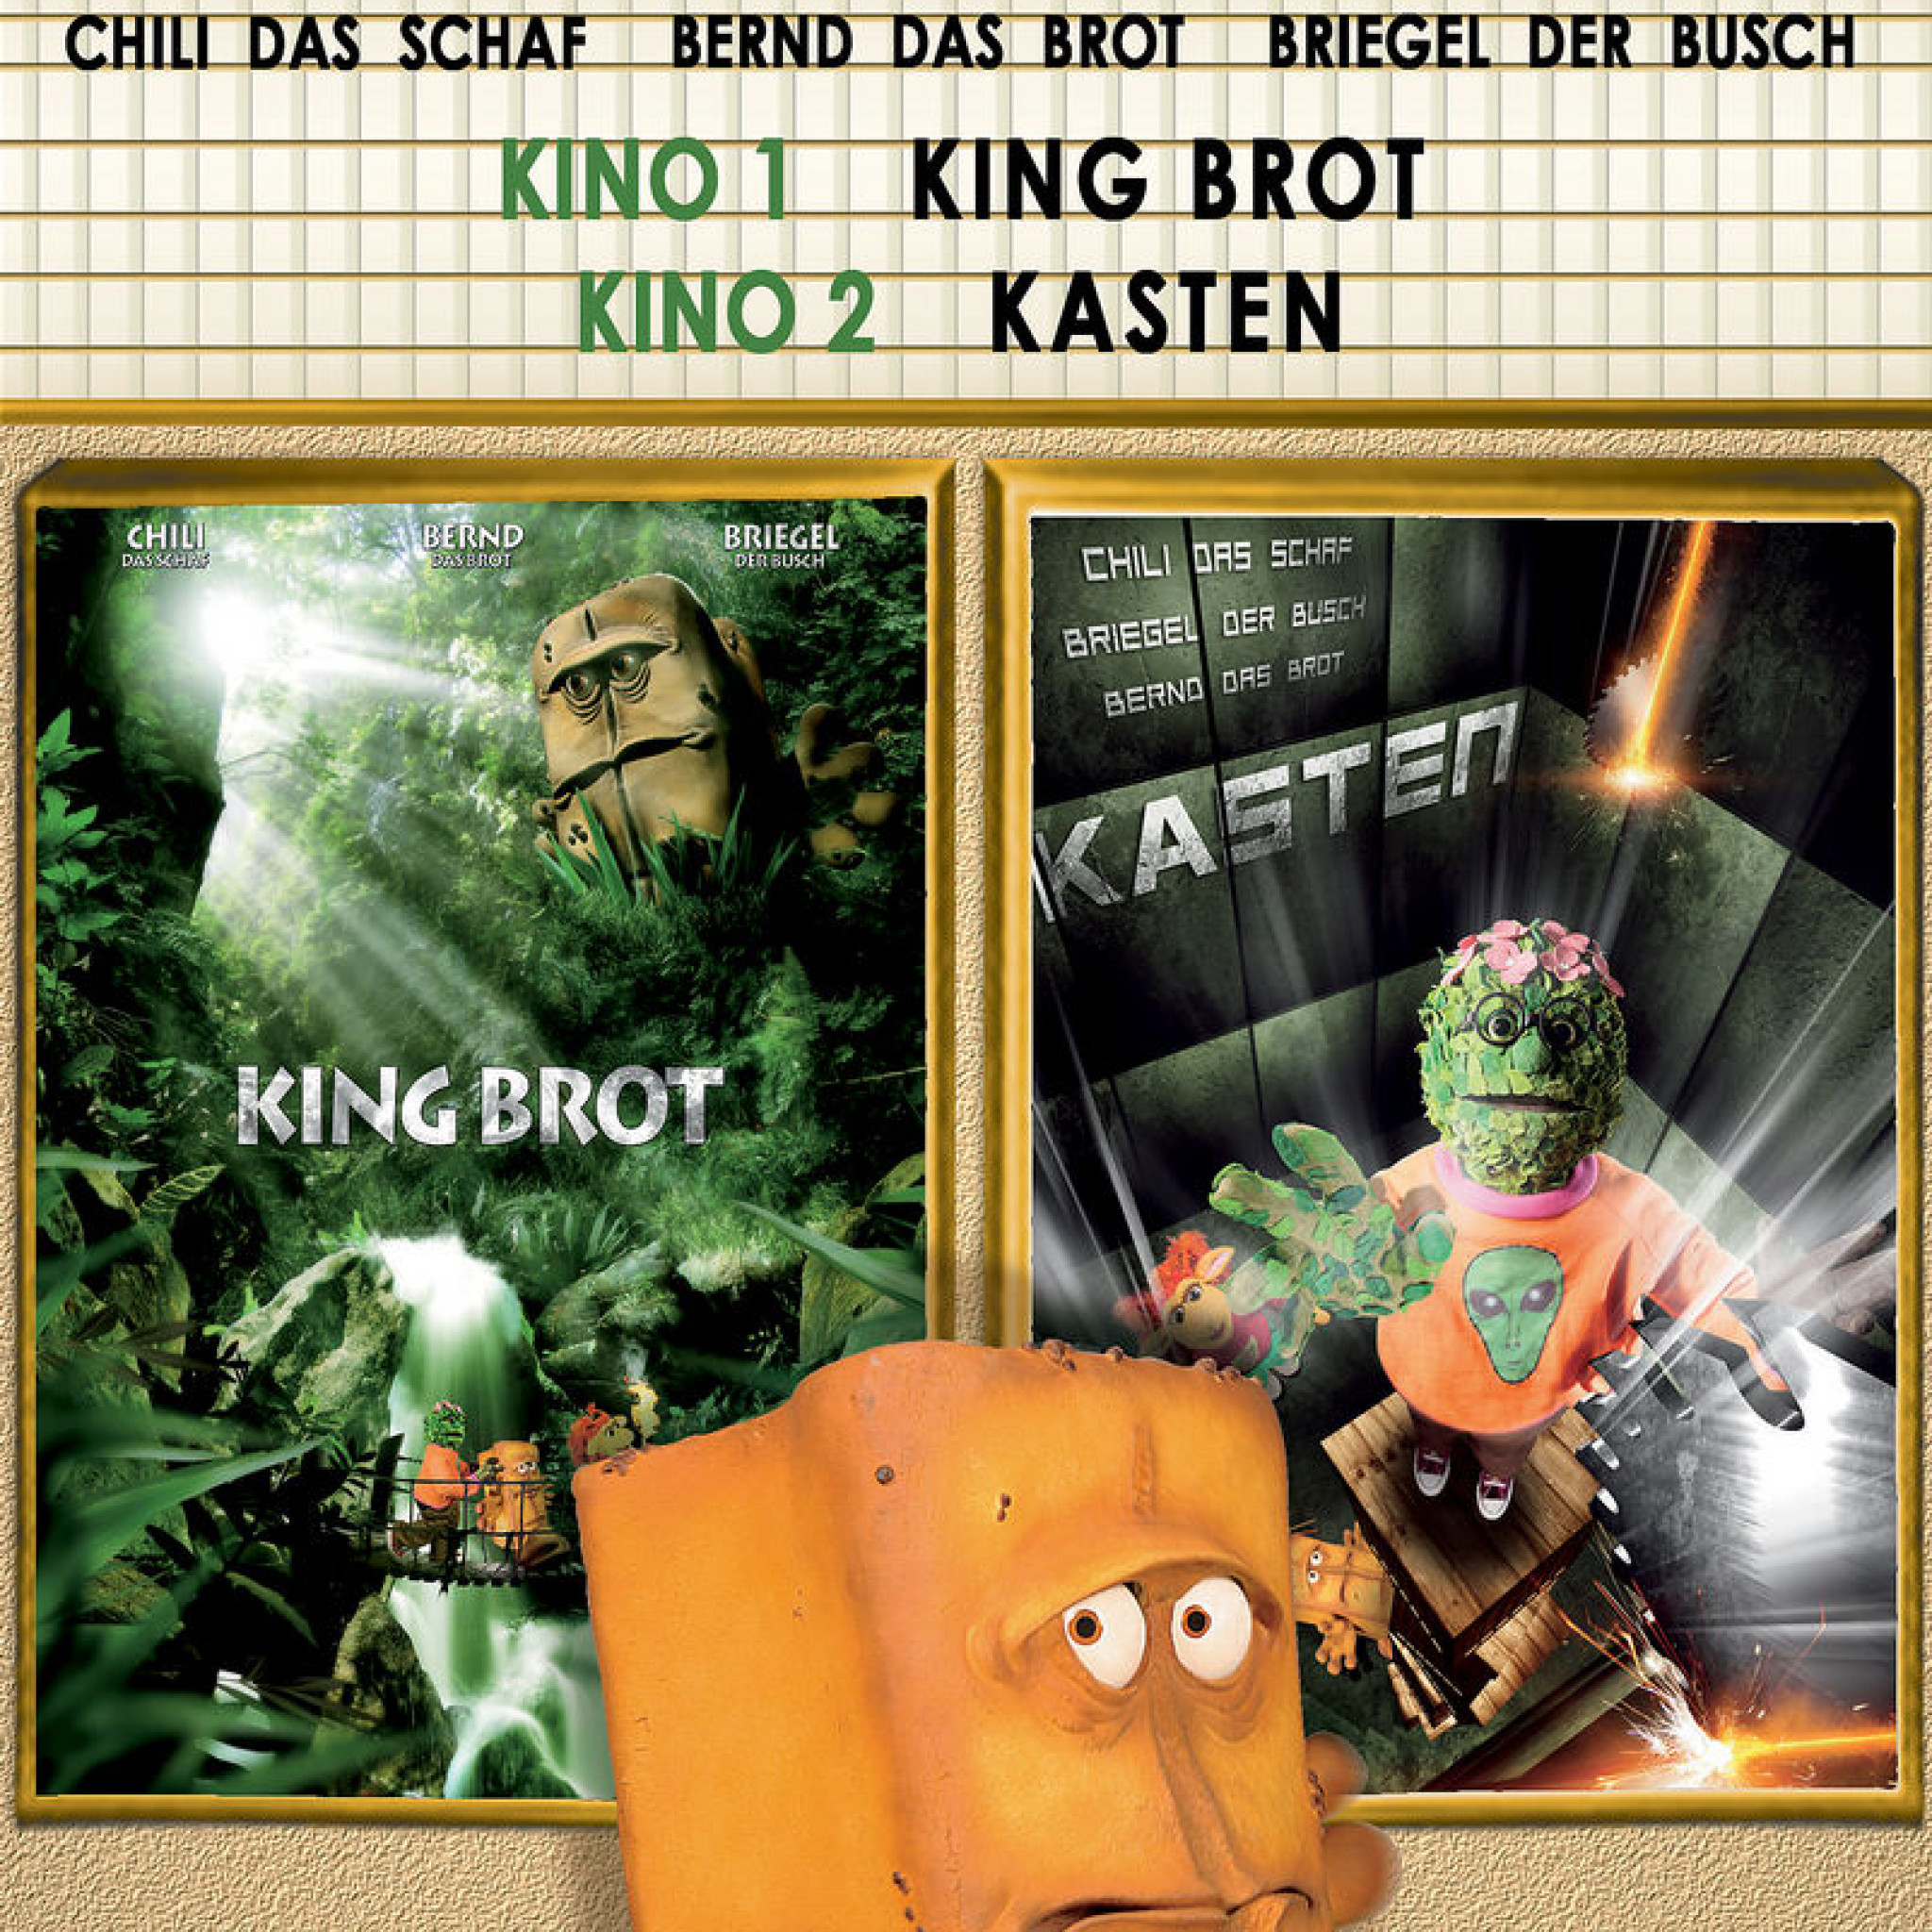 02: King Brot & KASTEN! 0602498774773